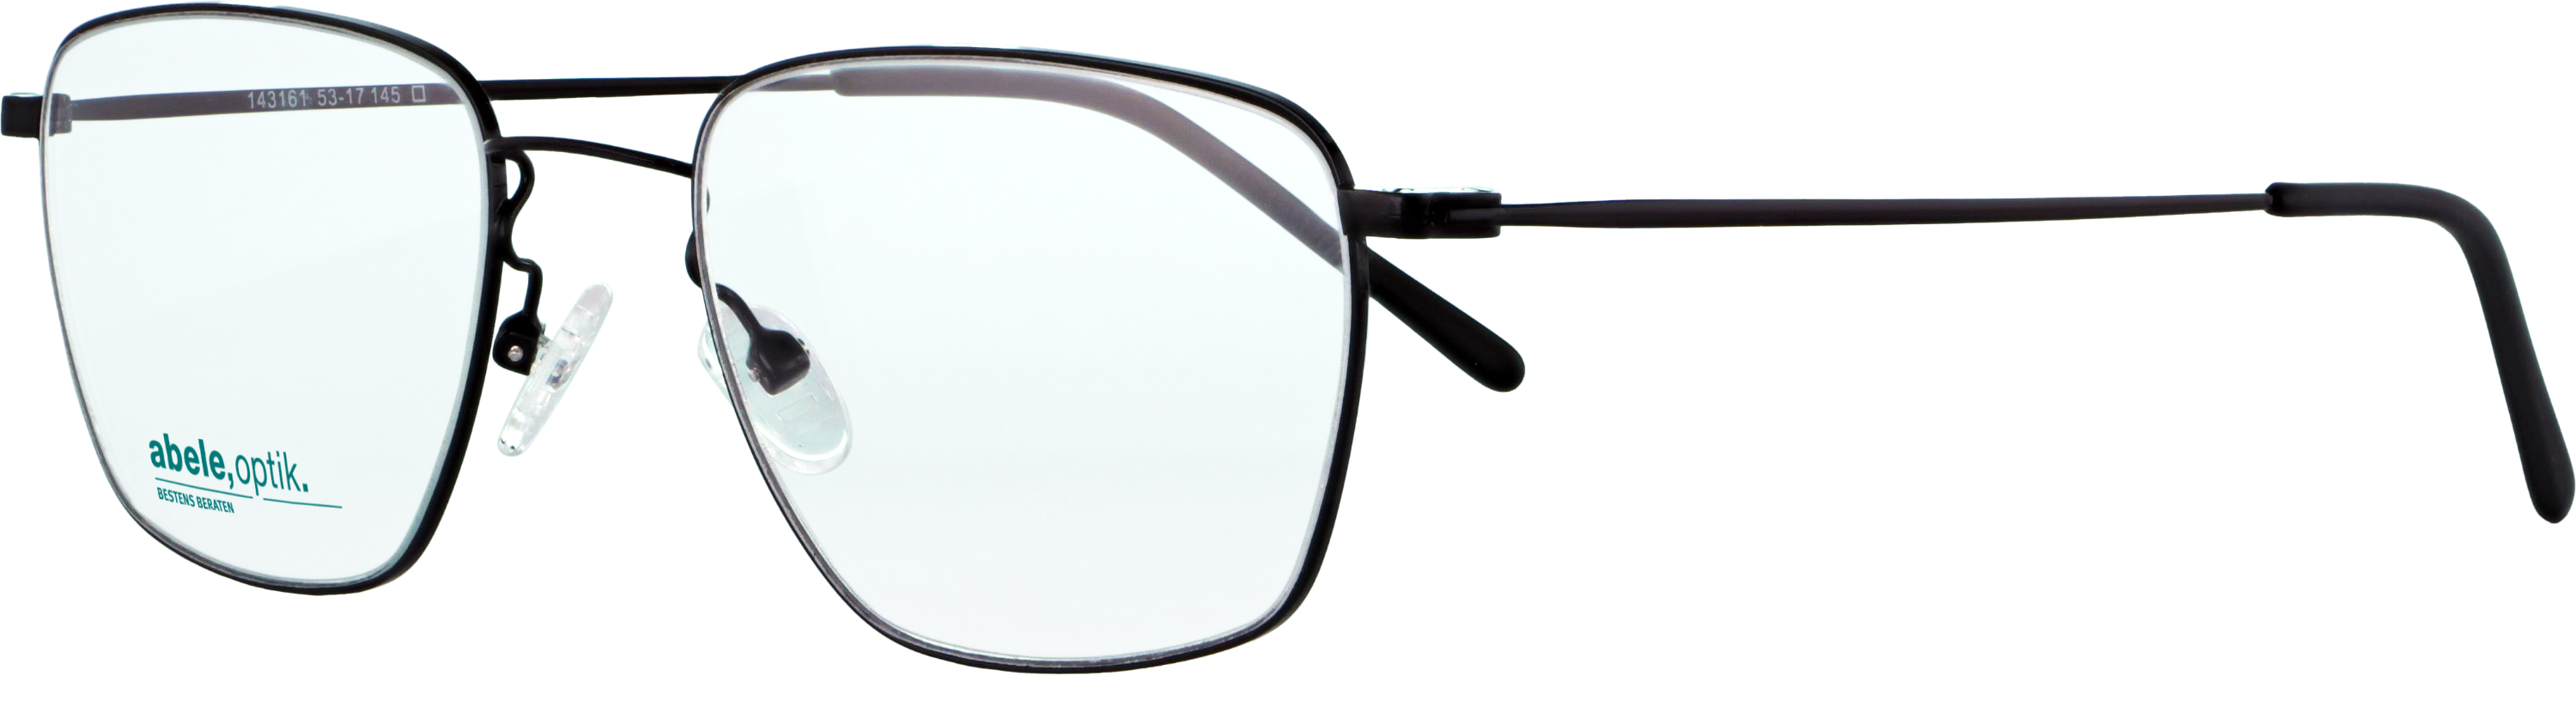 Das Bild zeigt die Korrektionsbrille 143161 von der Marke Abele Optik in schwarz.